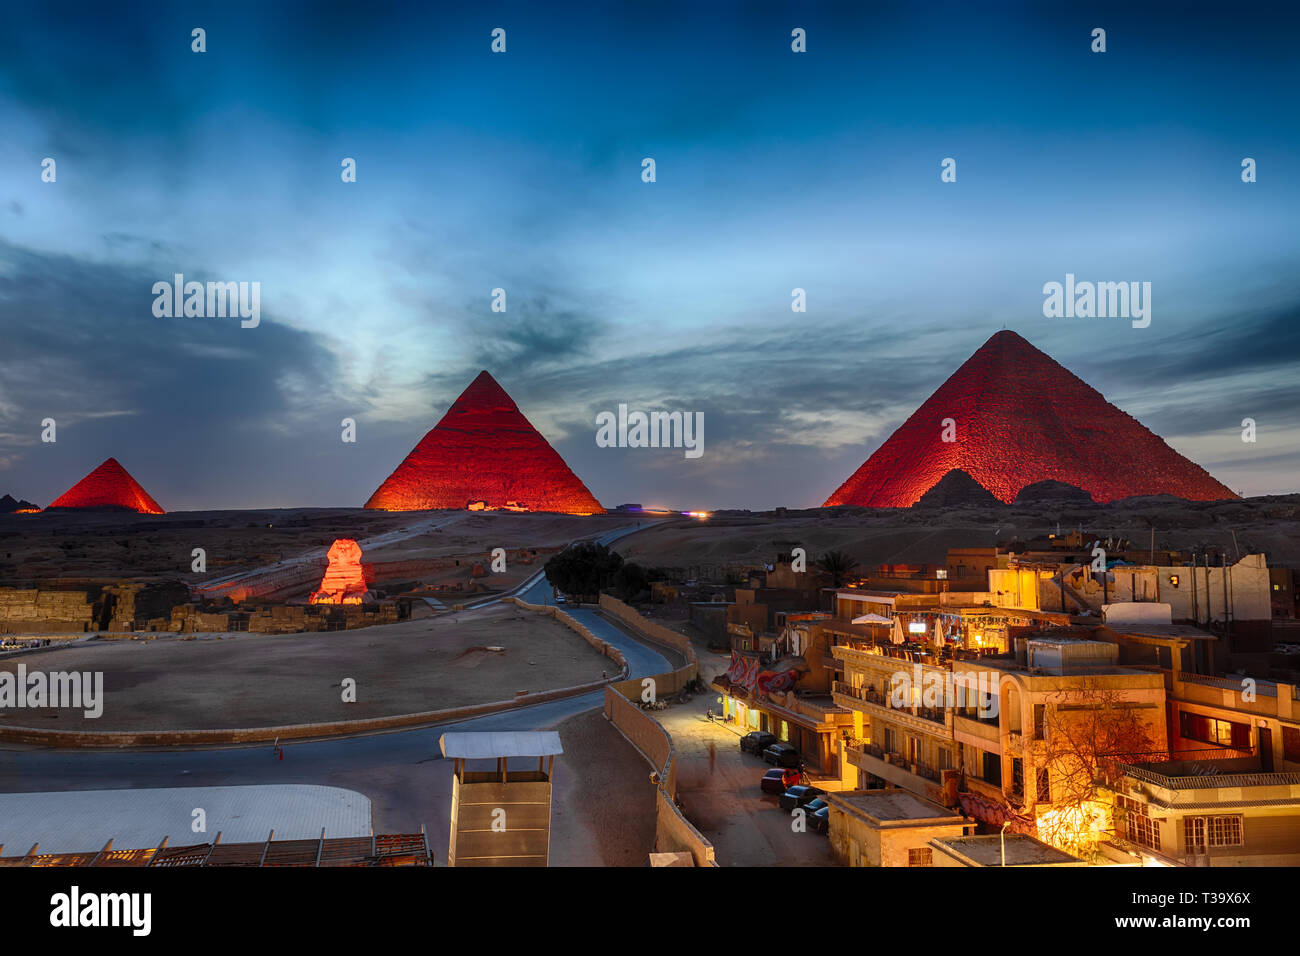 Las pirámides de noche, vista desde los edificios de Giza, Egipto Foto de stock